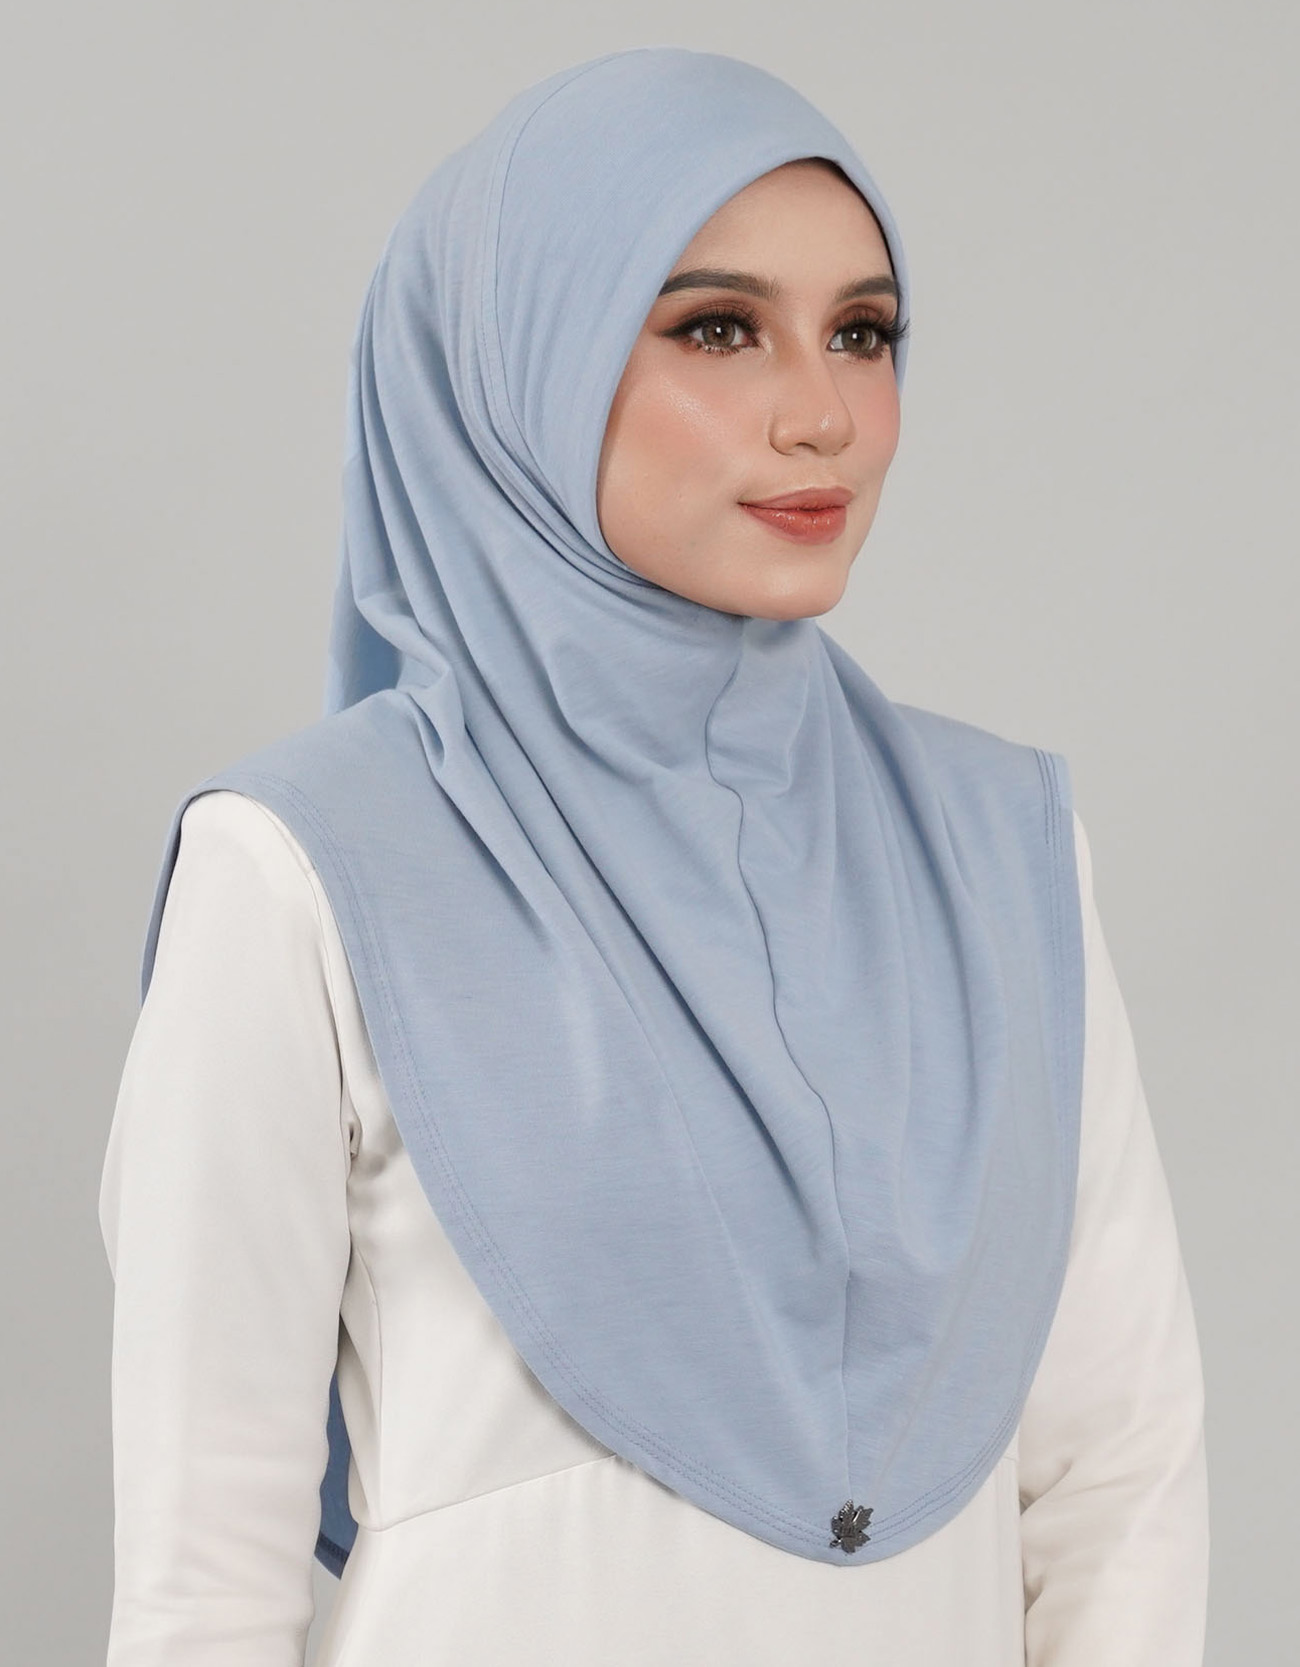 Express Hijab Damia Plain - 05 Baby Blue&w=300&zc=1